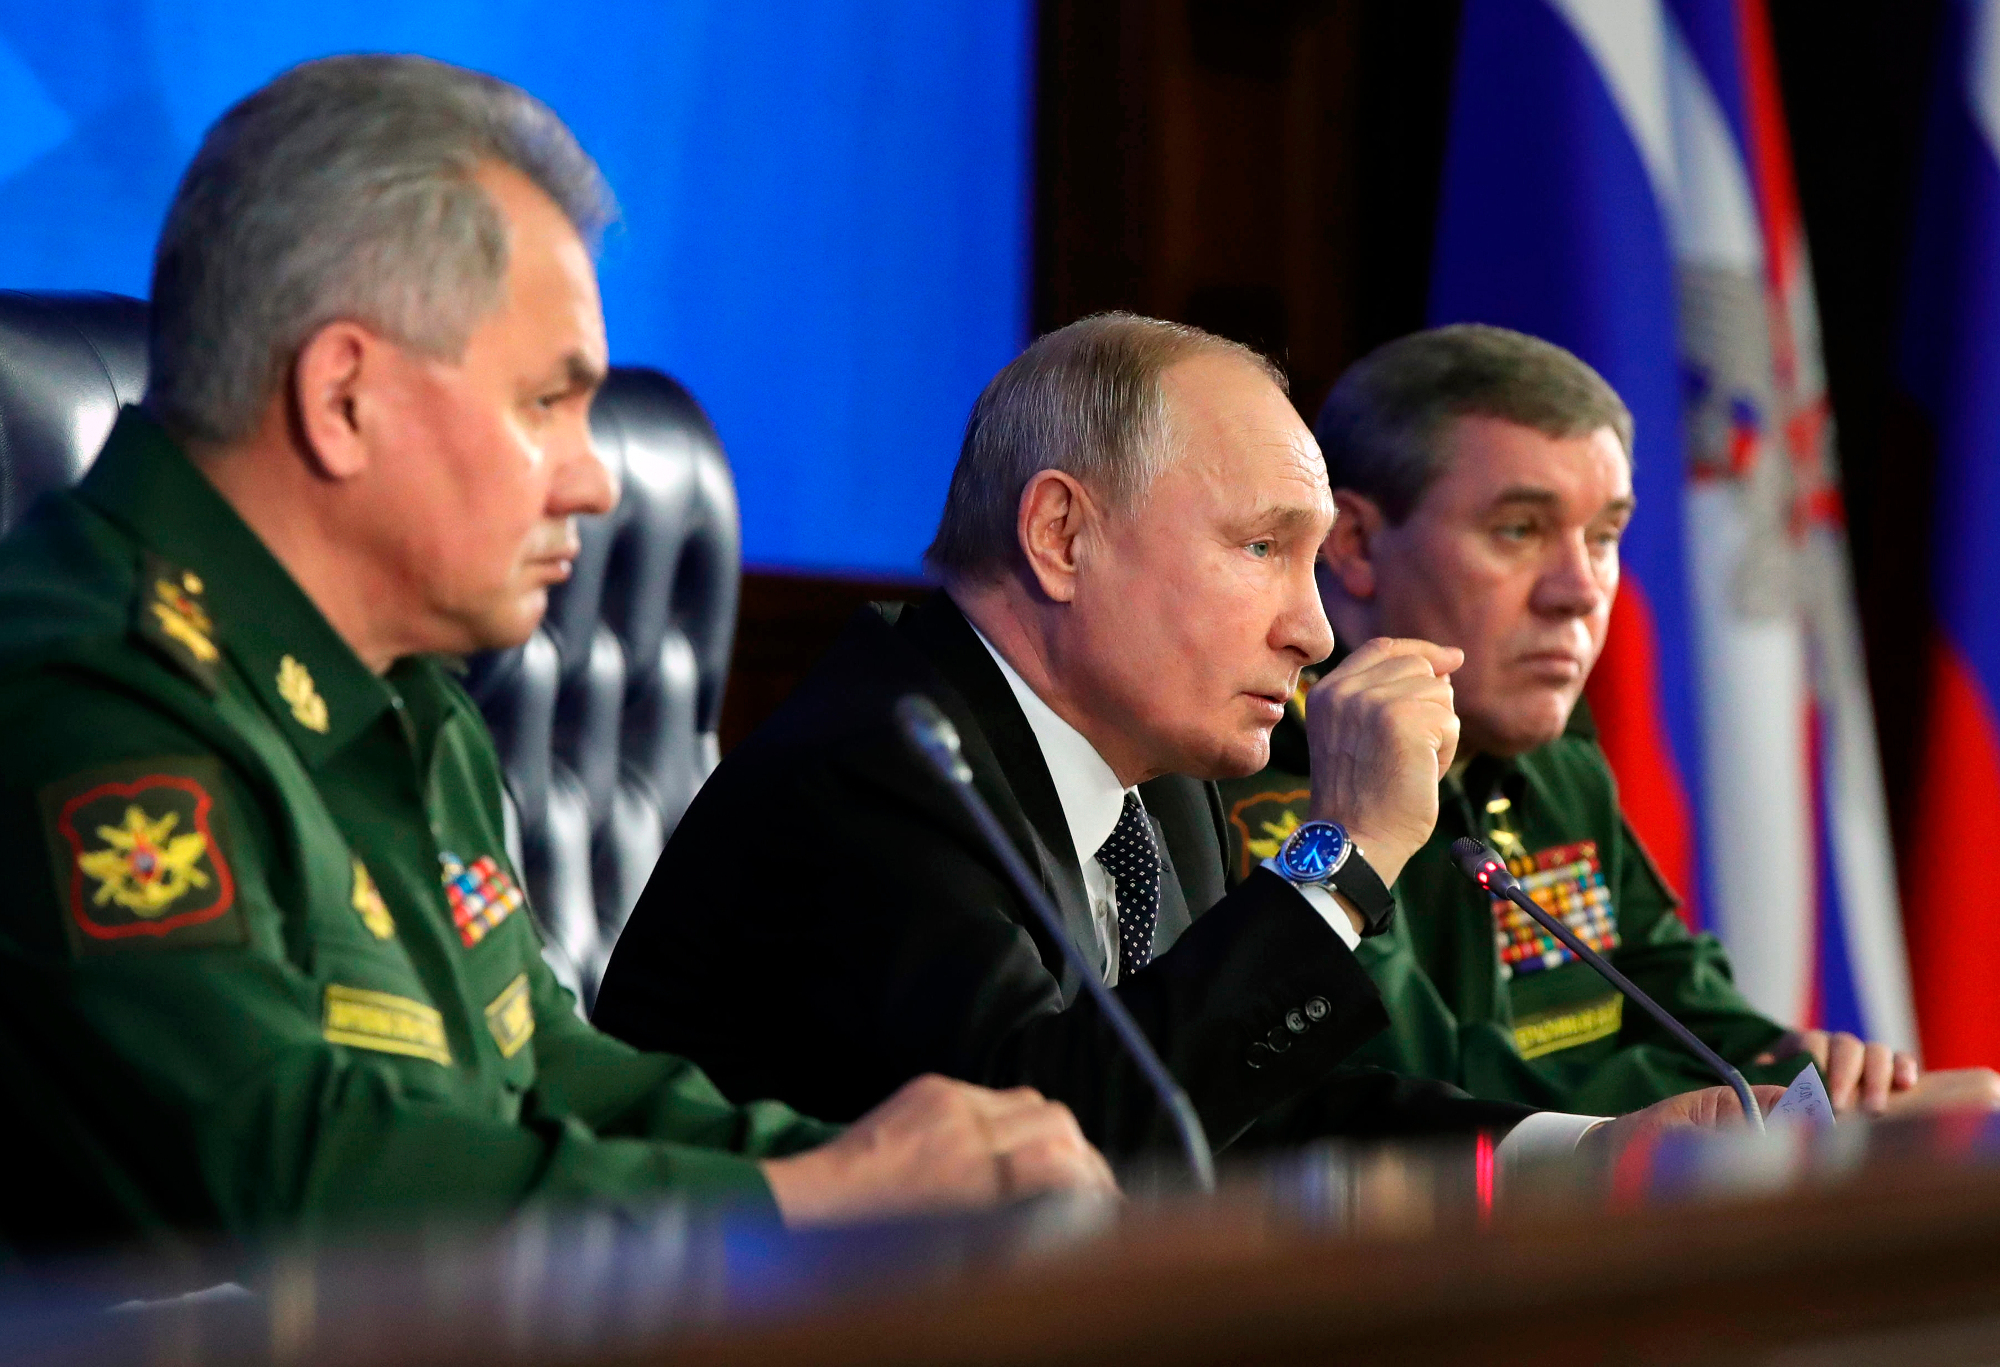 Putin and the military